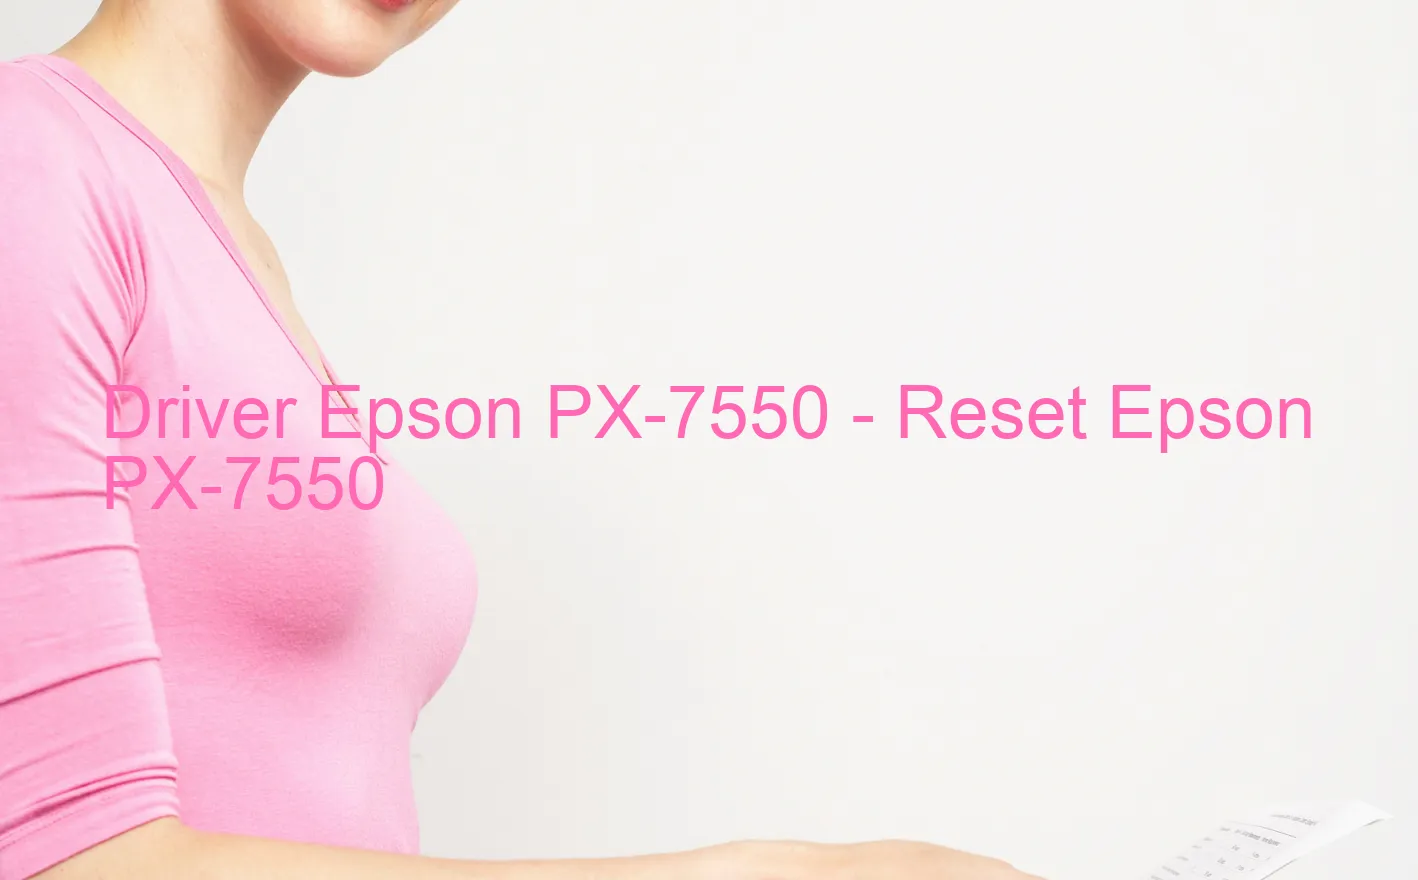 Epson PX-7550のドライバー、Epson PX-7550のリセットソフトウェア